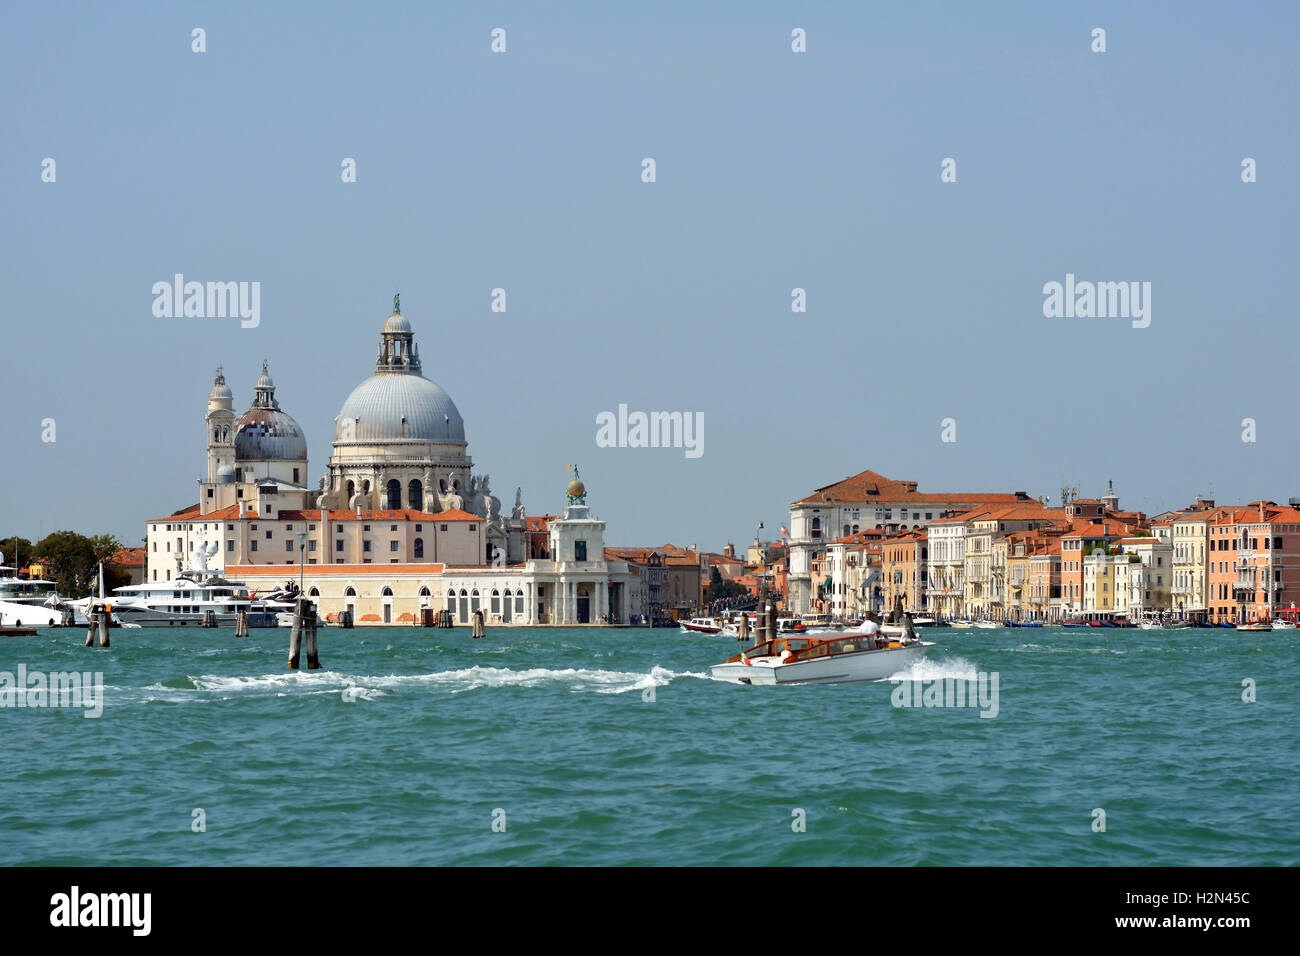 Basilica Santa Maria della Salute with the Punta della Dogana of Venice in Italy. Stock Photo